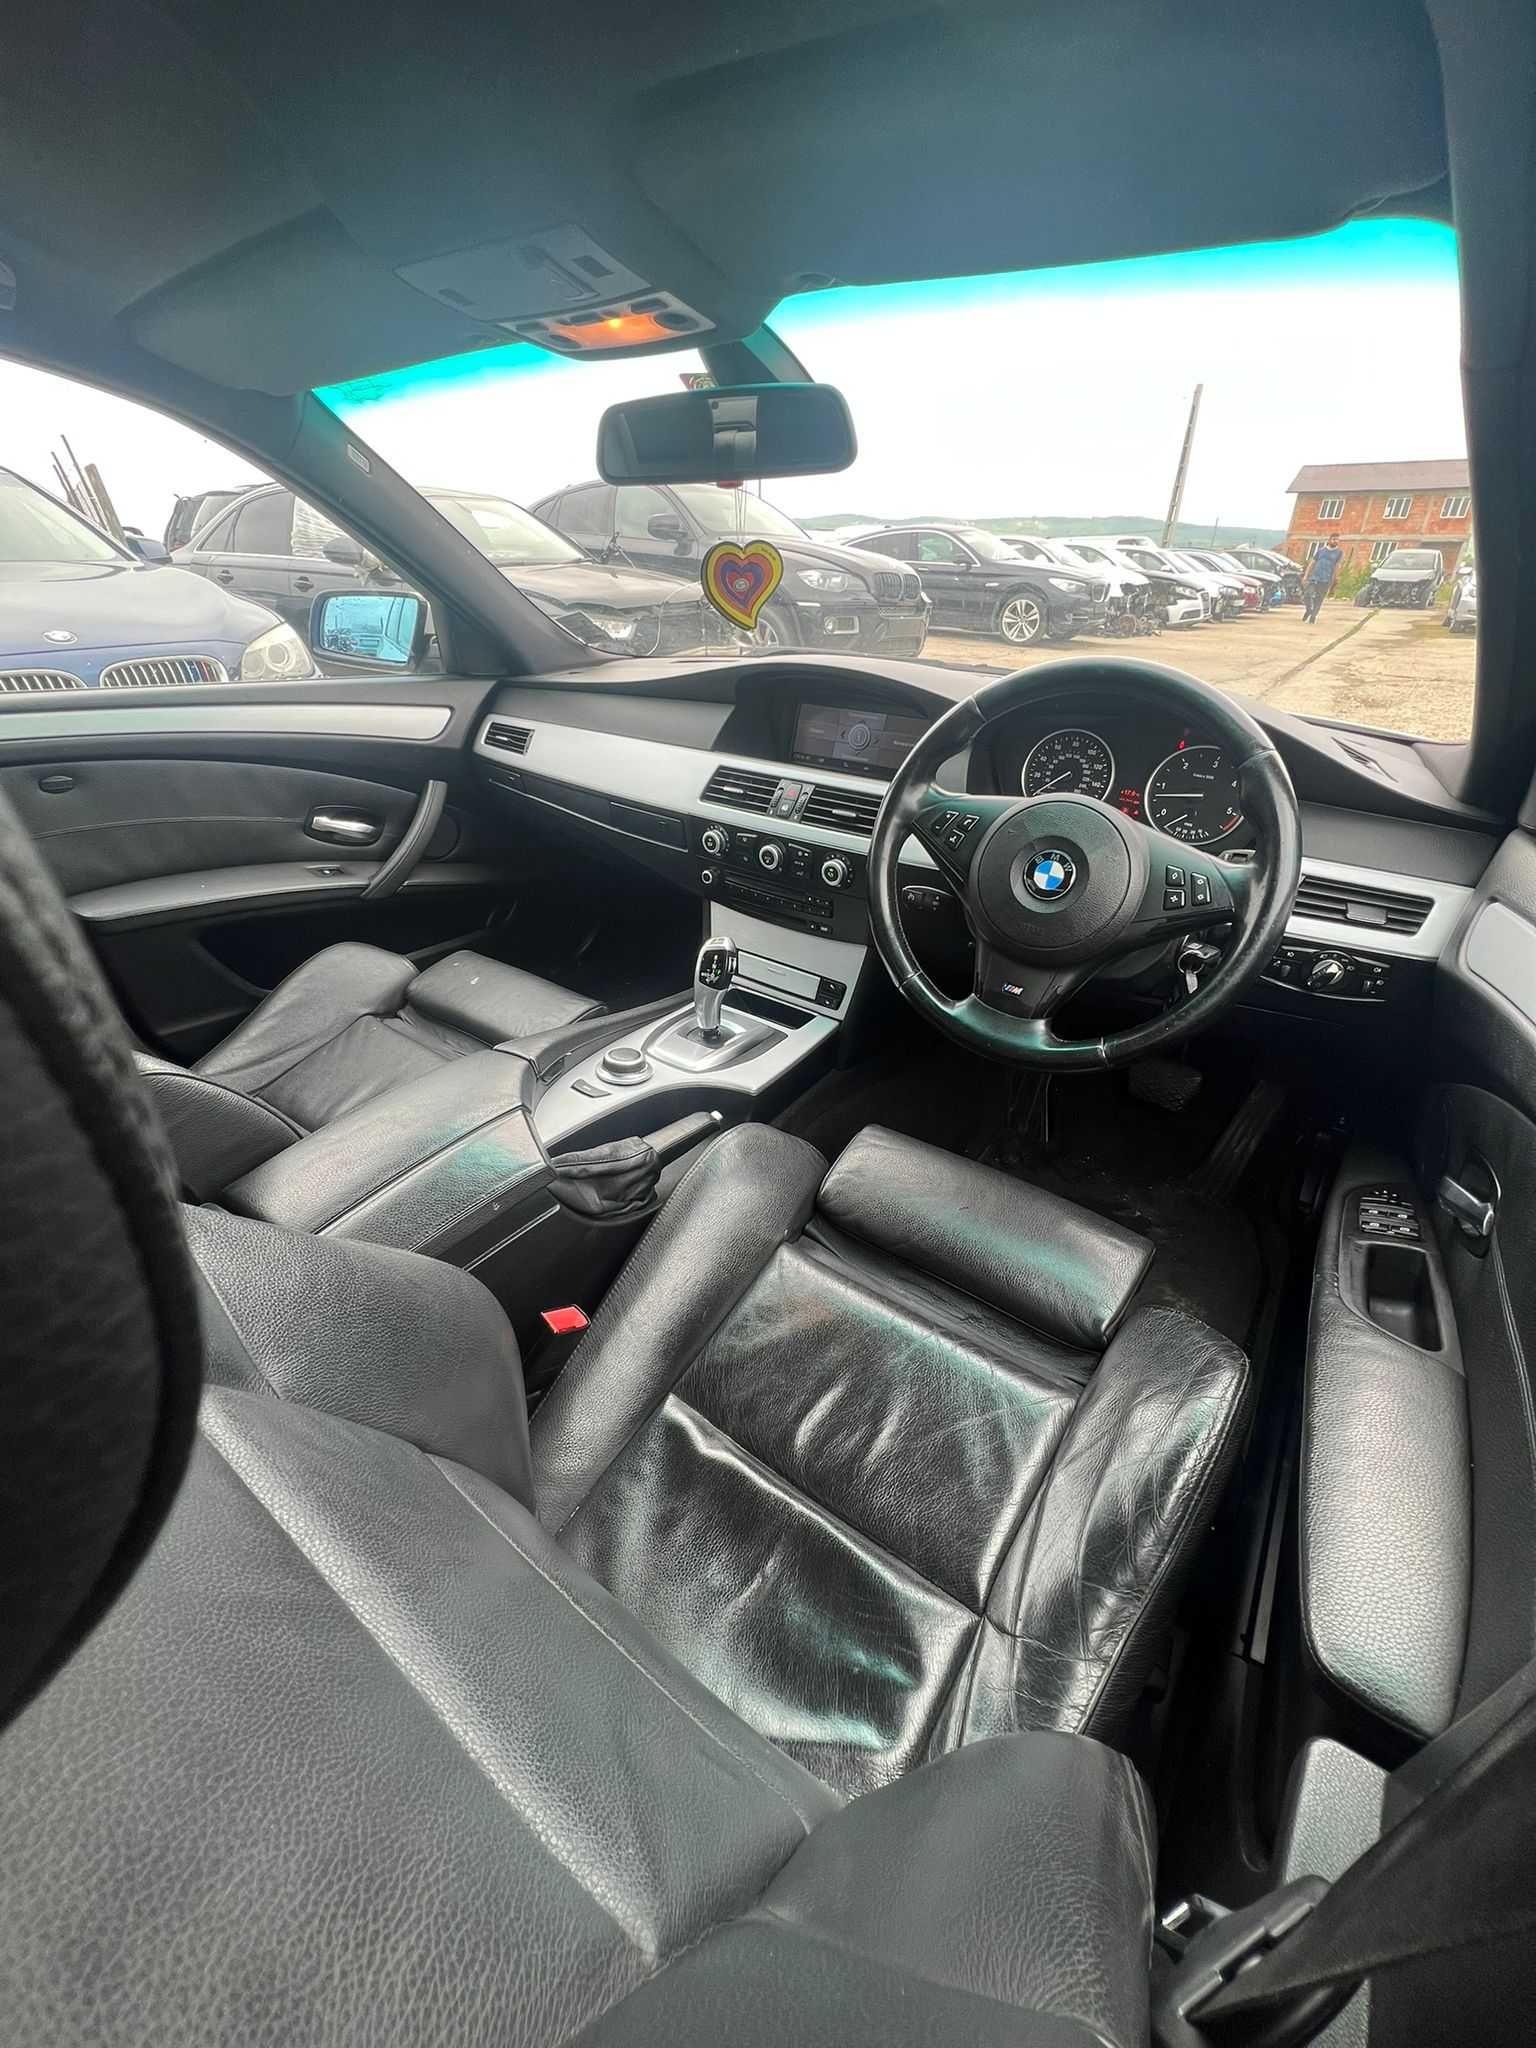 Dezmembram BMW 530d E60 facelift, full M pachet interior exterior,